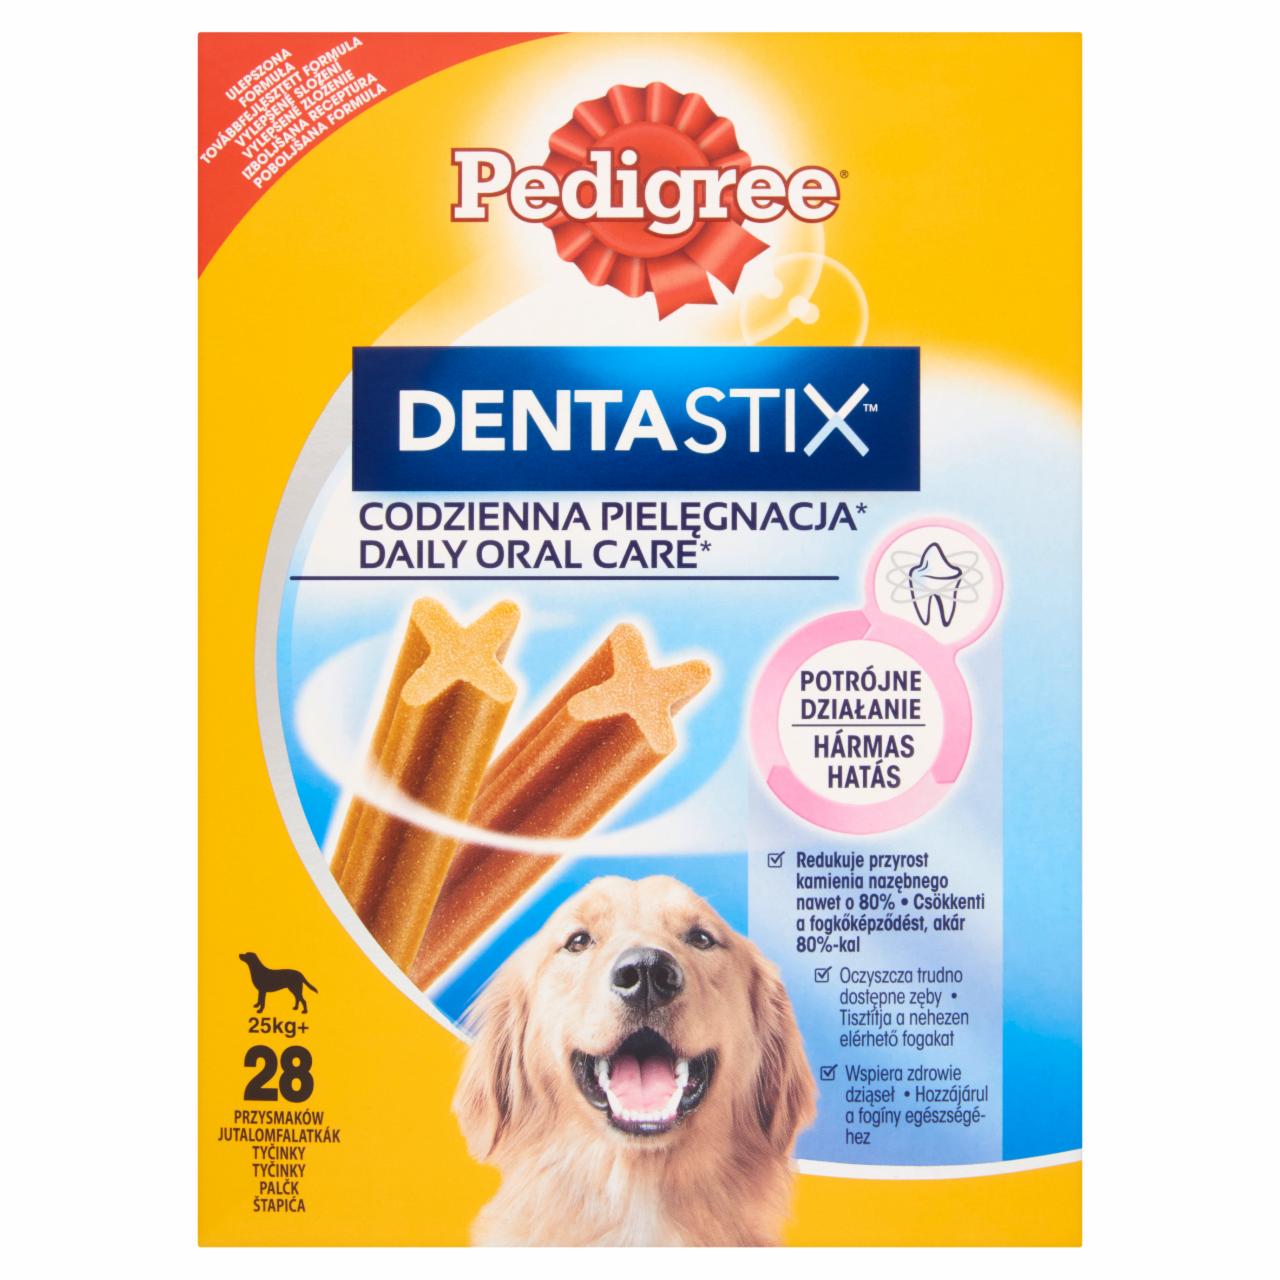 Képek - Pedigree DentaStix jutalomfalat 25 kg+-os kutyáknak 28 db 1080 g